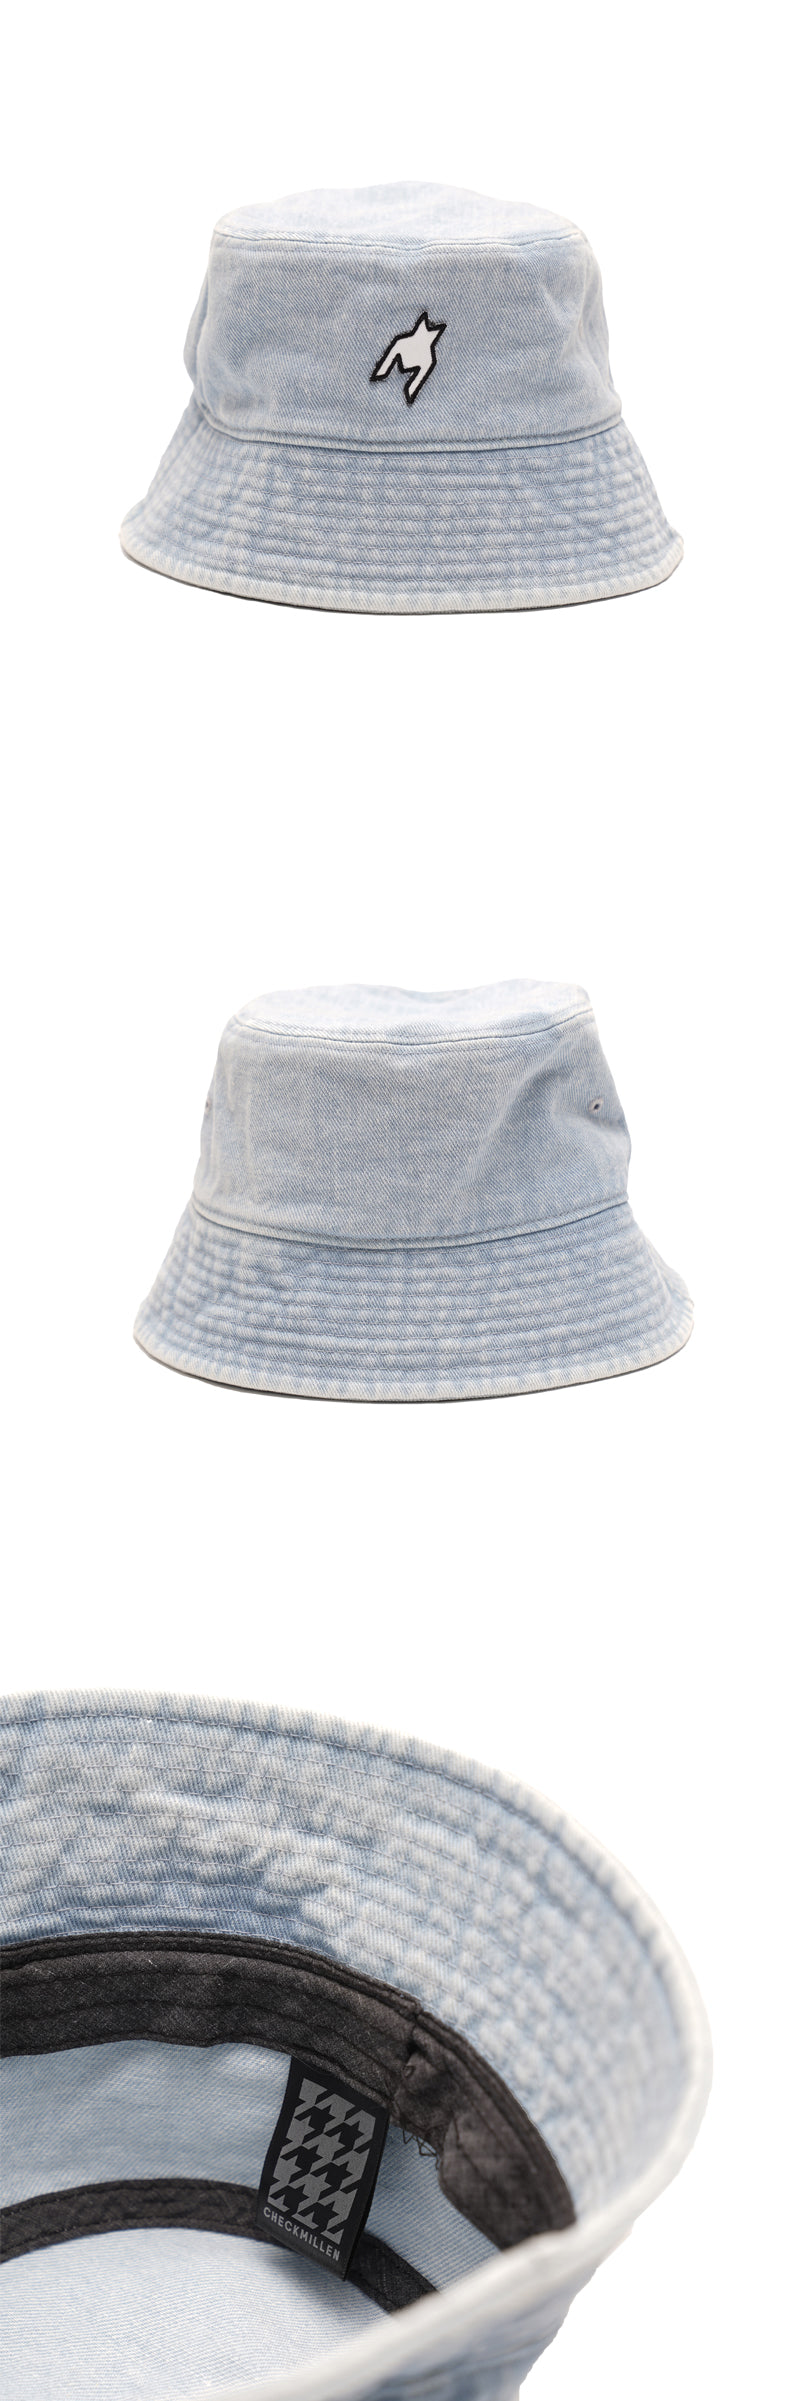 ロゴデニムバケットハット / Logo Denim Bucket Hat (Light Blue)